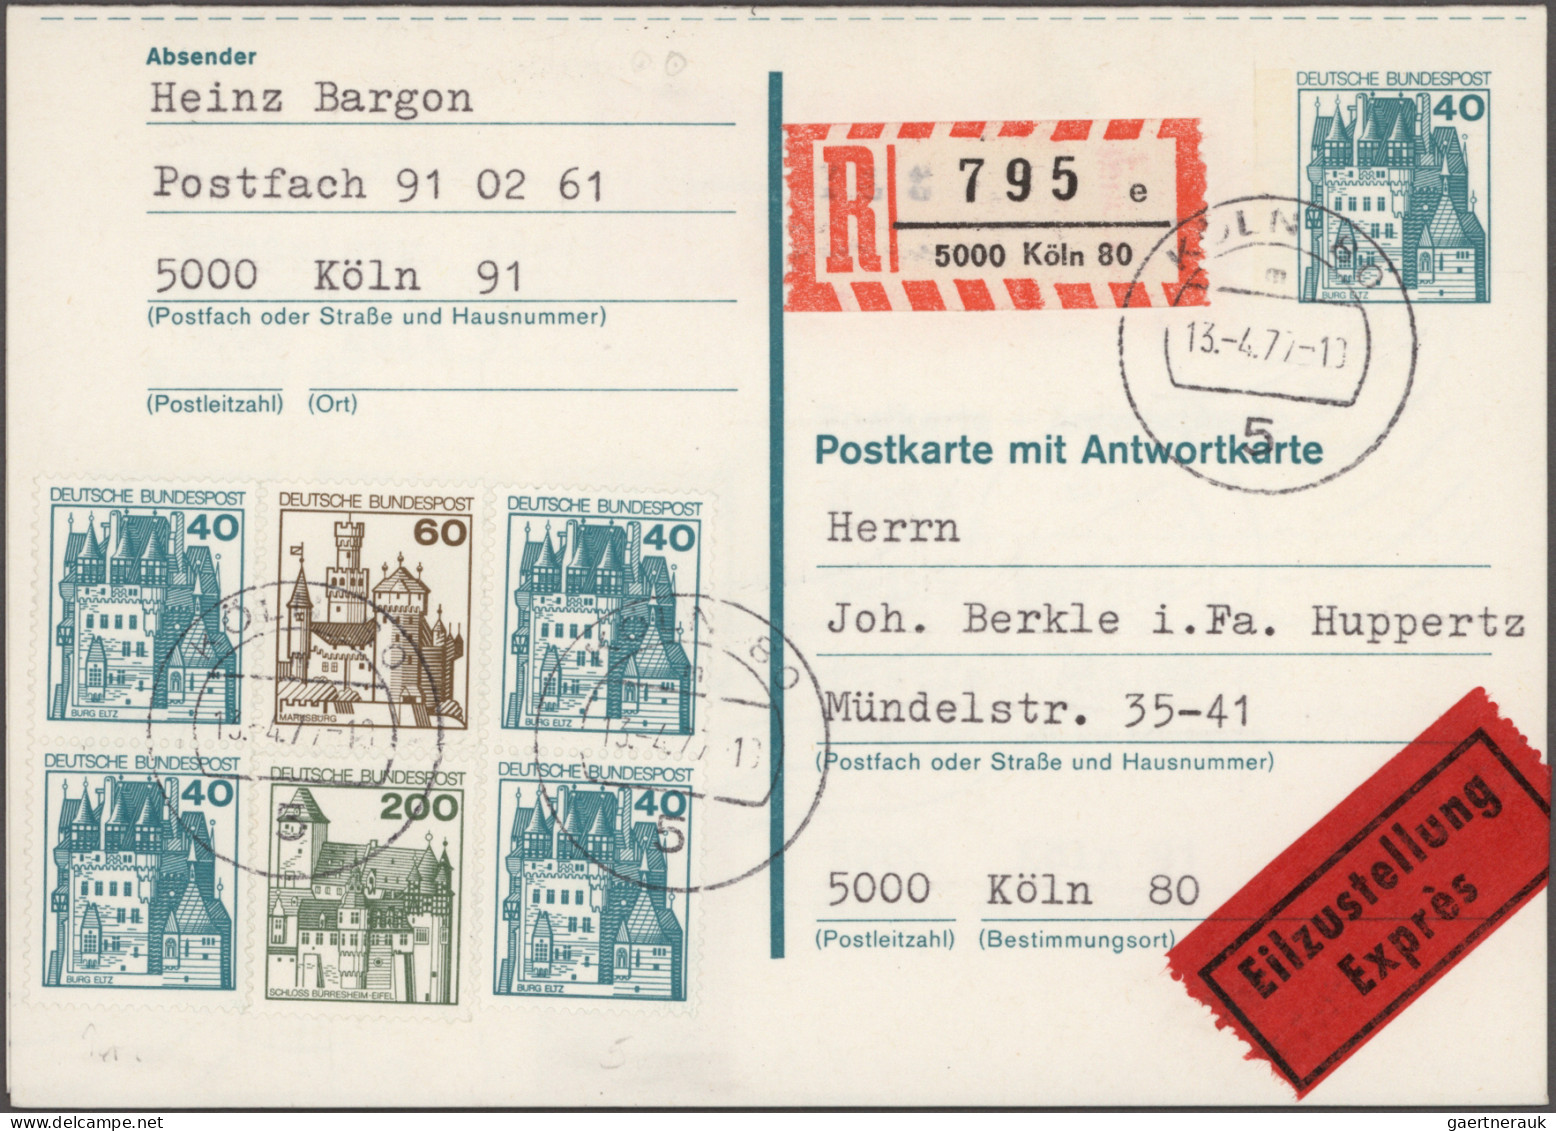 Bundesrepublik - Ganzsachen: 1971/2004, umfangreiche Sammlung von ca. 770 gebrau